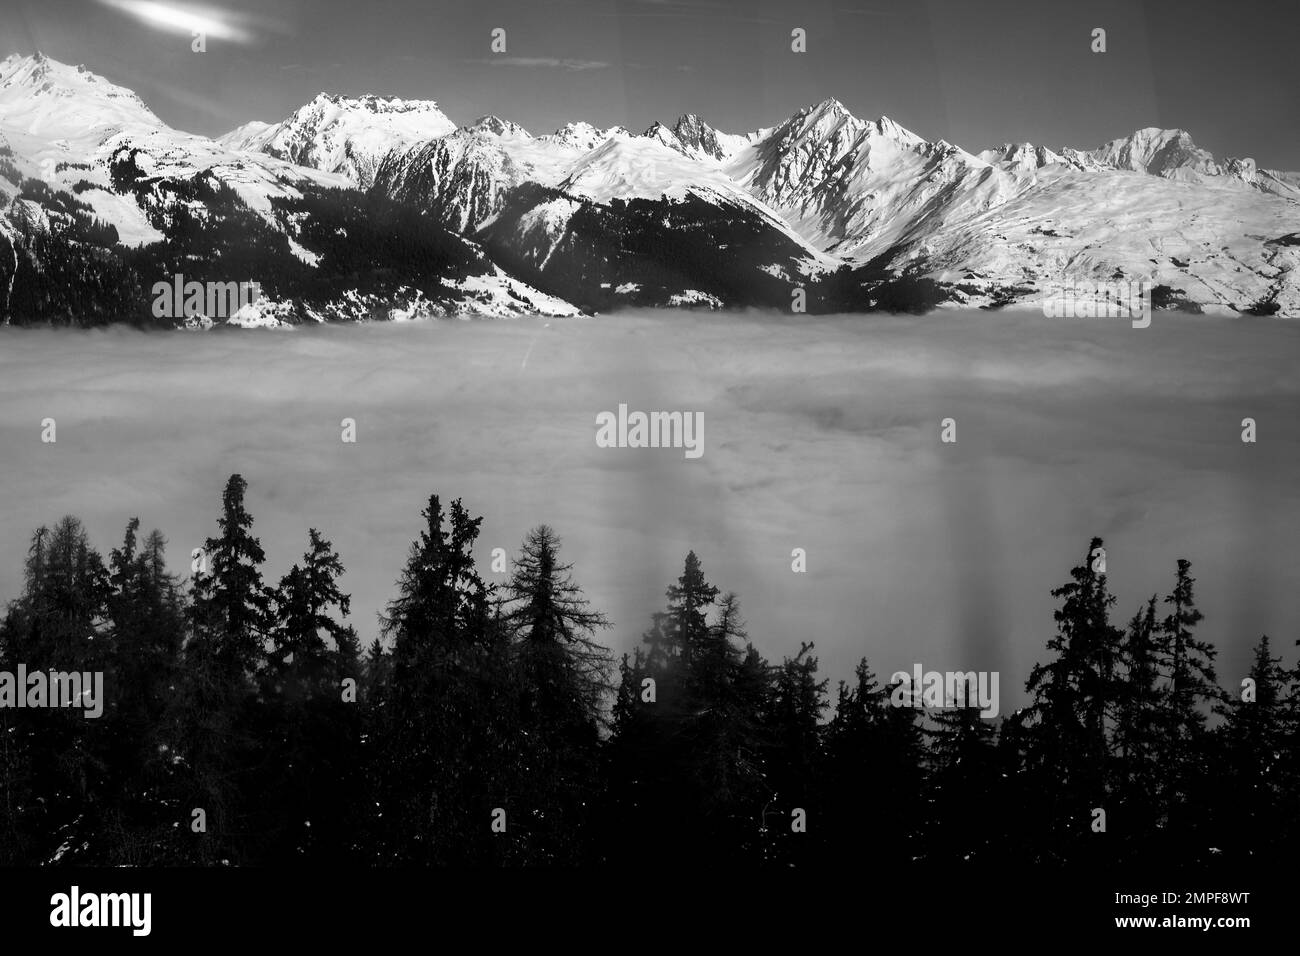 Michael Bunel / Le Pictorium - Skifahren in den Alpen - 5/1/2016 - Savoie / Frankreich / La plagne - Illustration Skiurlaub. 23. Januar 2023 La plagn Stockfoto